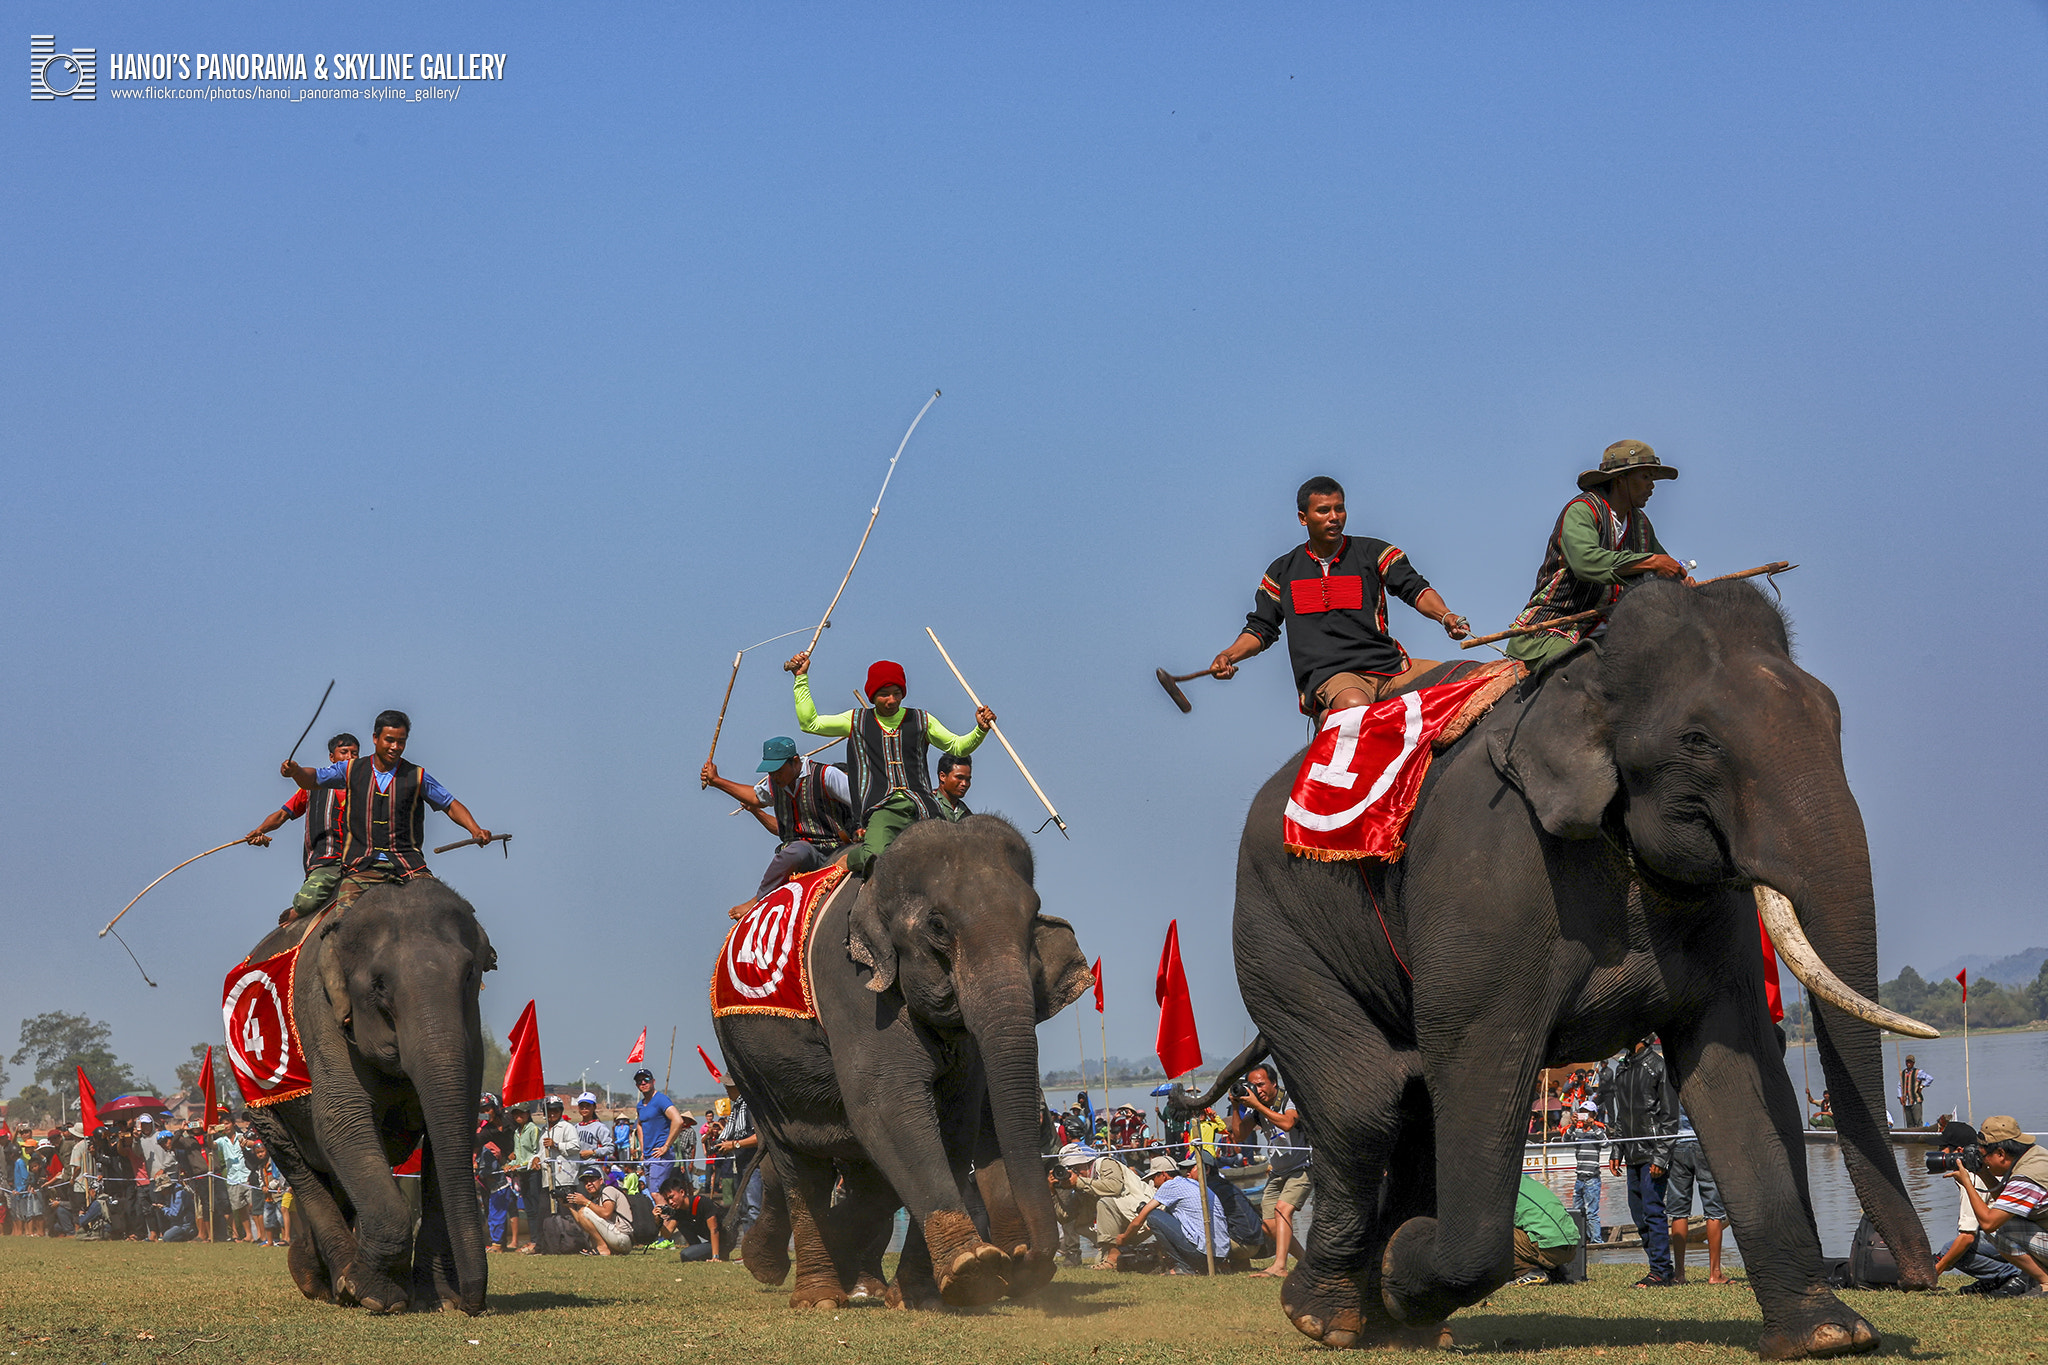 Canon EOS 5D Mark IV sample photo. The buon don elephant races photography